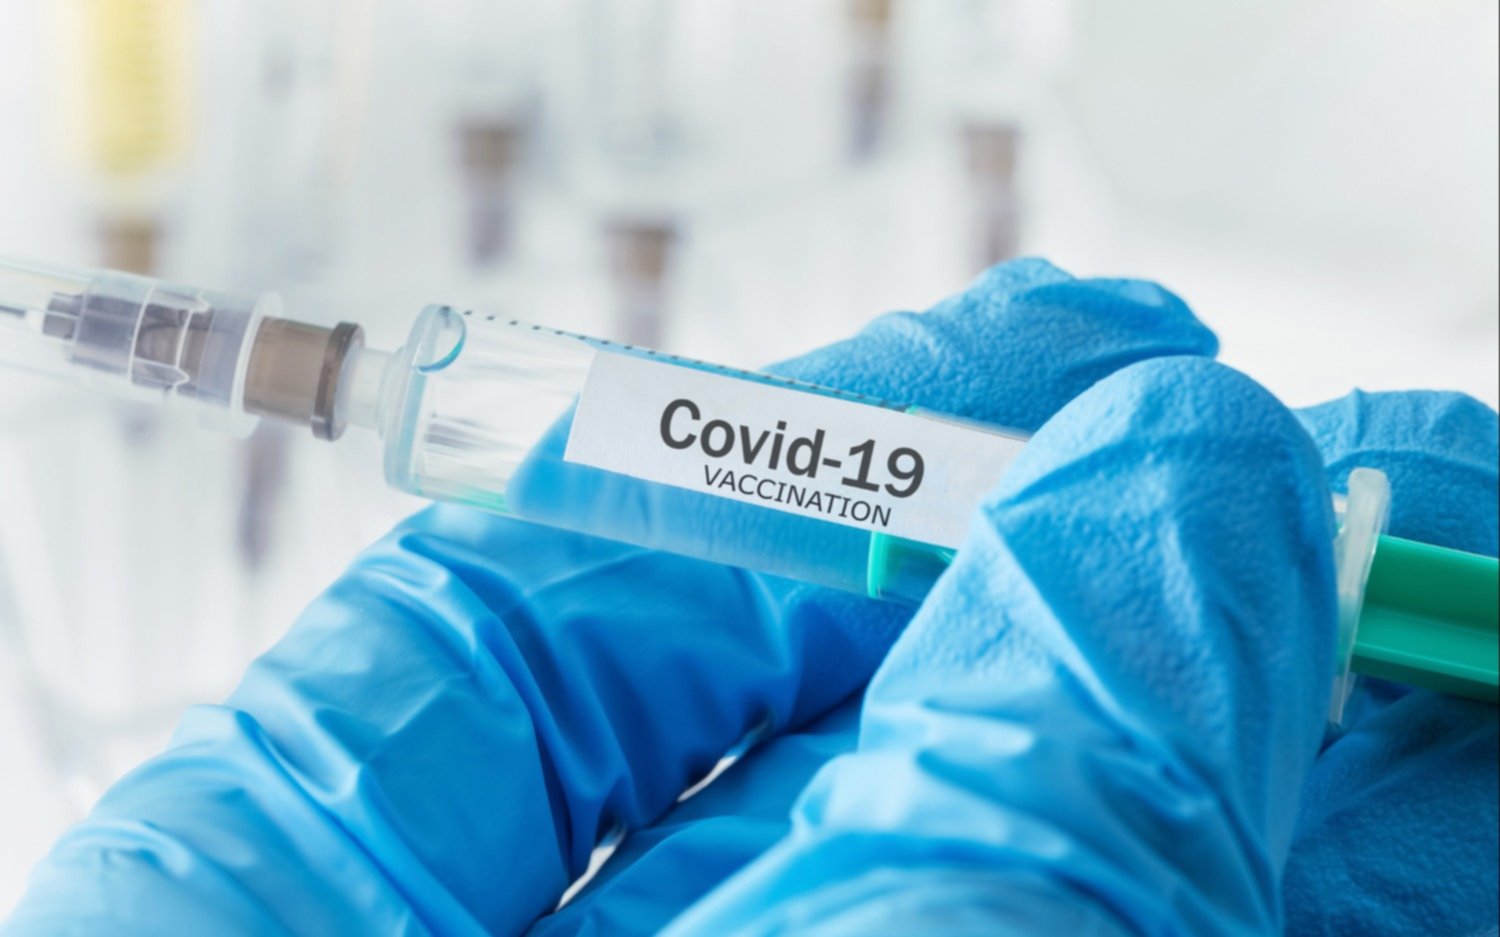 Un matrimonio de jubilados de La Plata recibió en su casa la vacuna contra el COVID-19 gracias a un fallo judicial